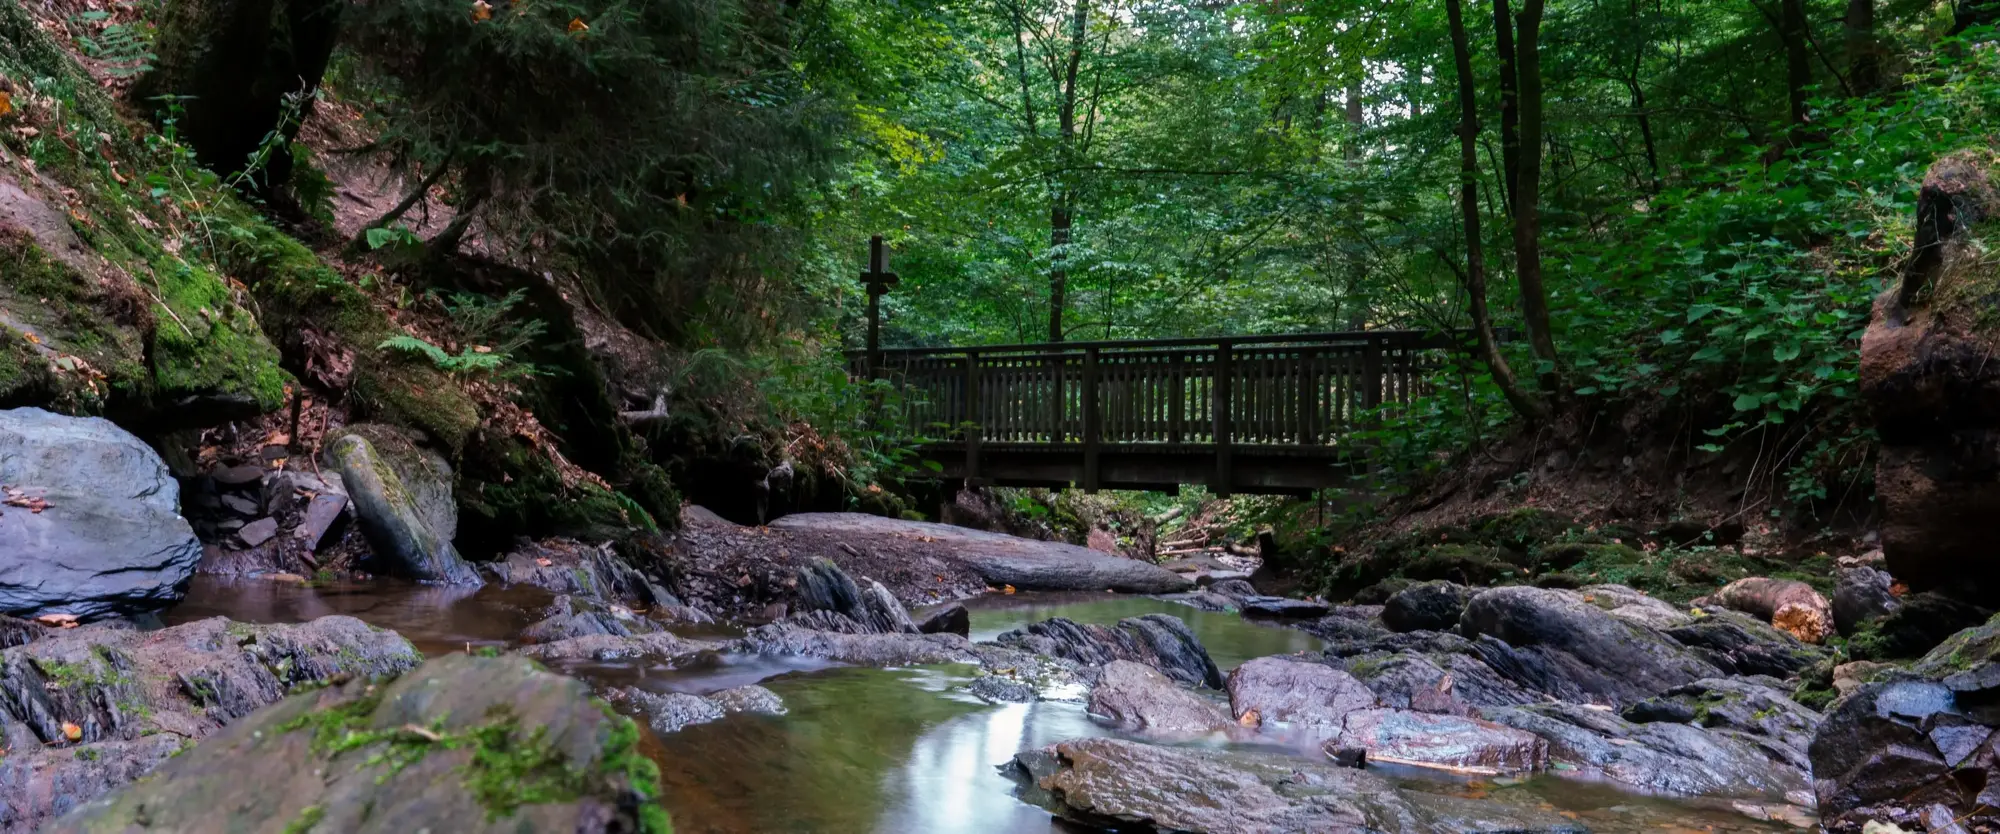 Eine Holzbrücke über einem Bach im Wald auf dem Brücken- und Schluchtenweg.